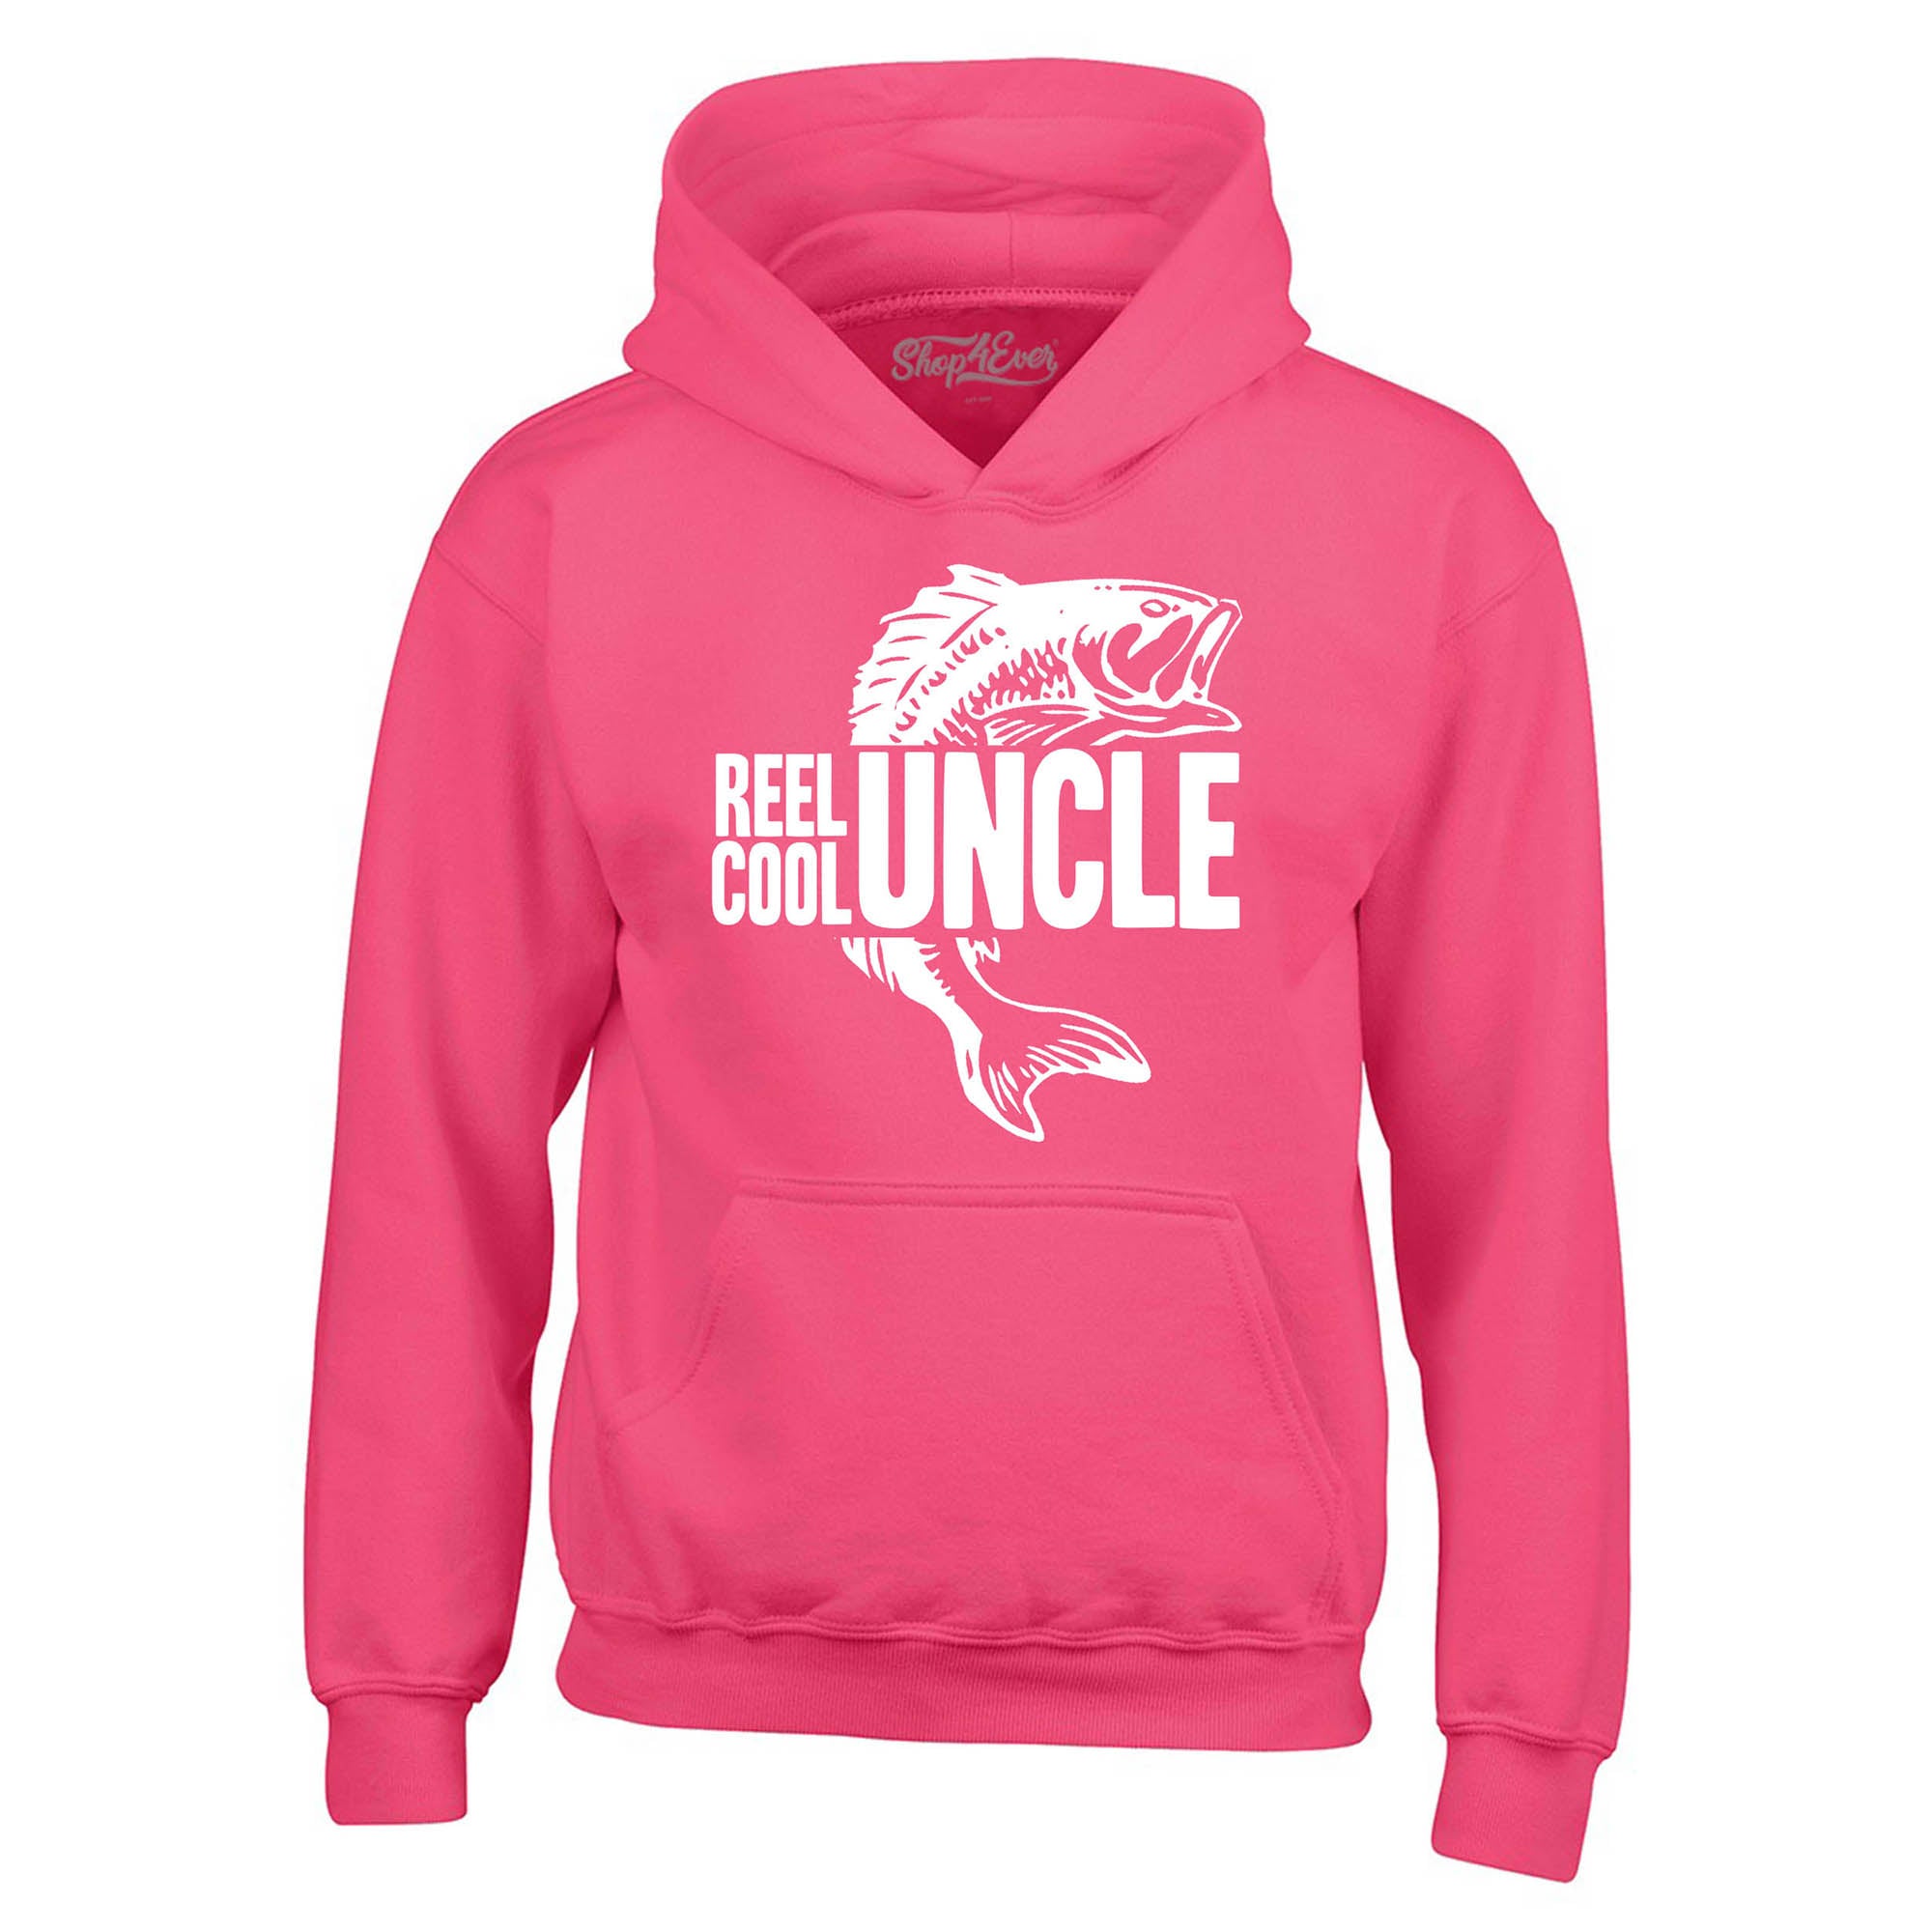 Reel Cool Uncle Hoodie Sweatshirts